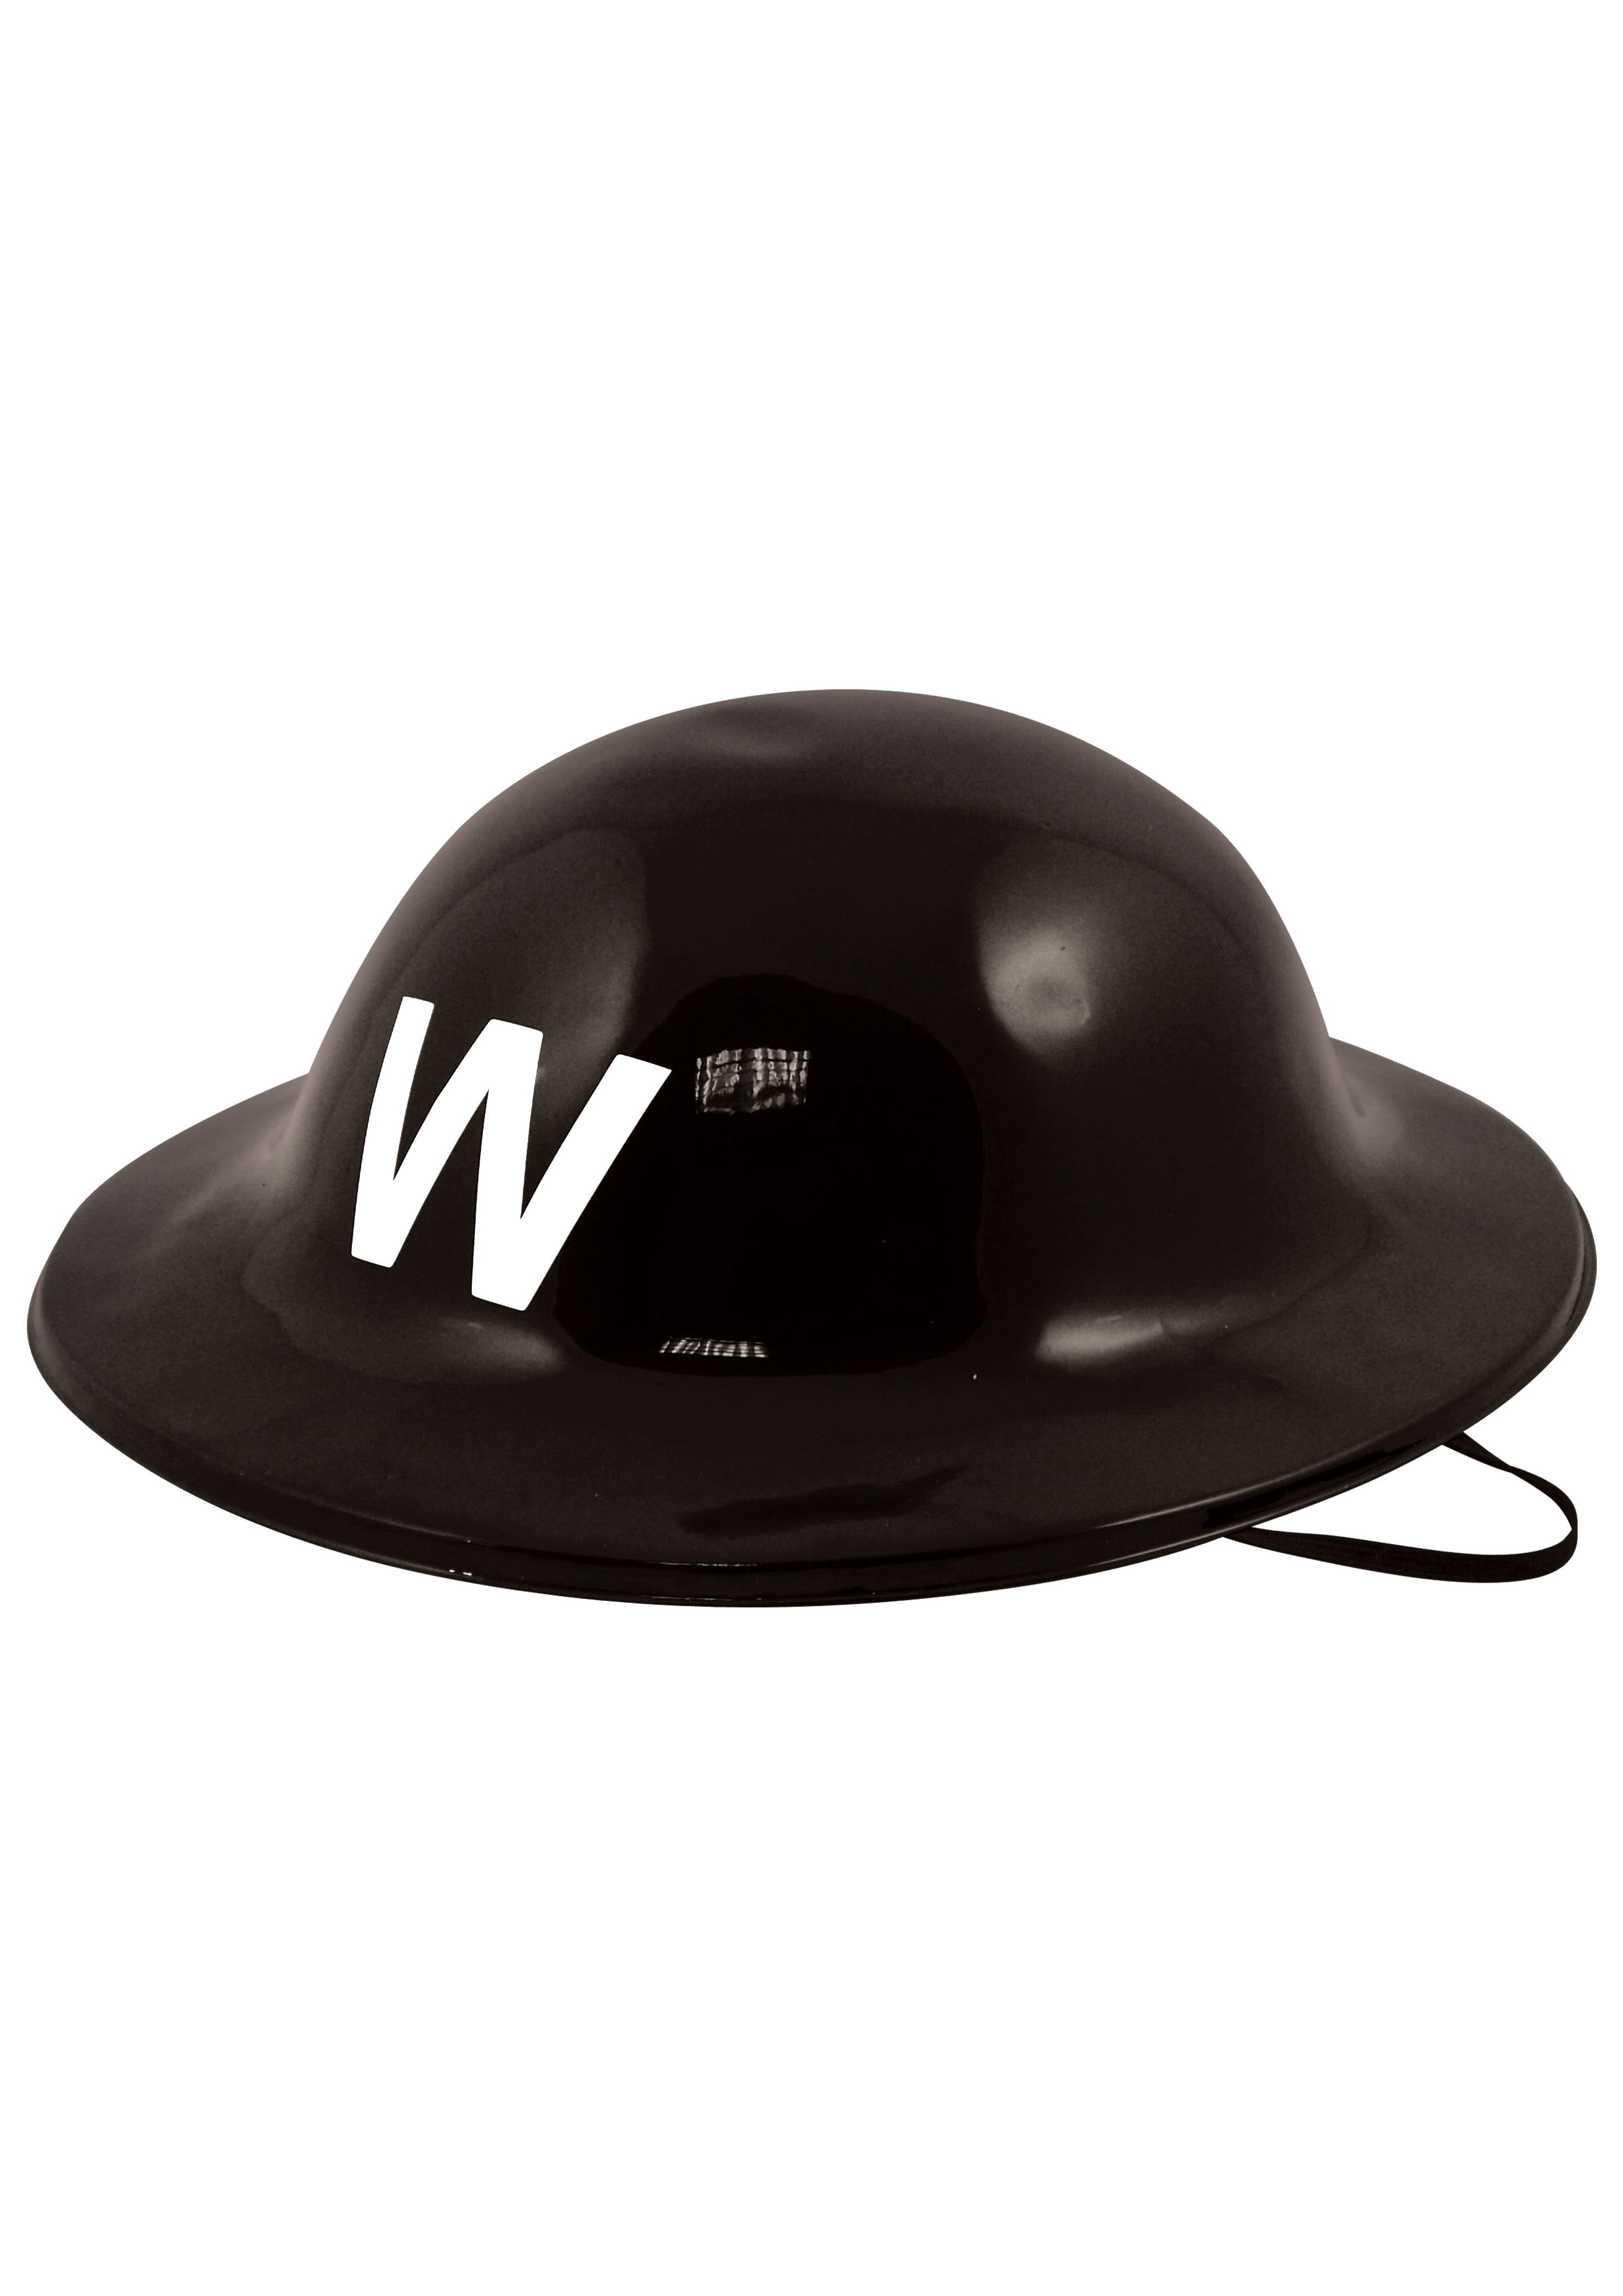 Warden Plastic Helmet